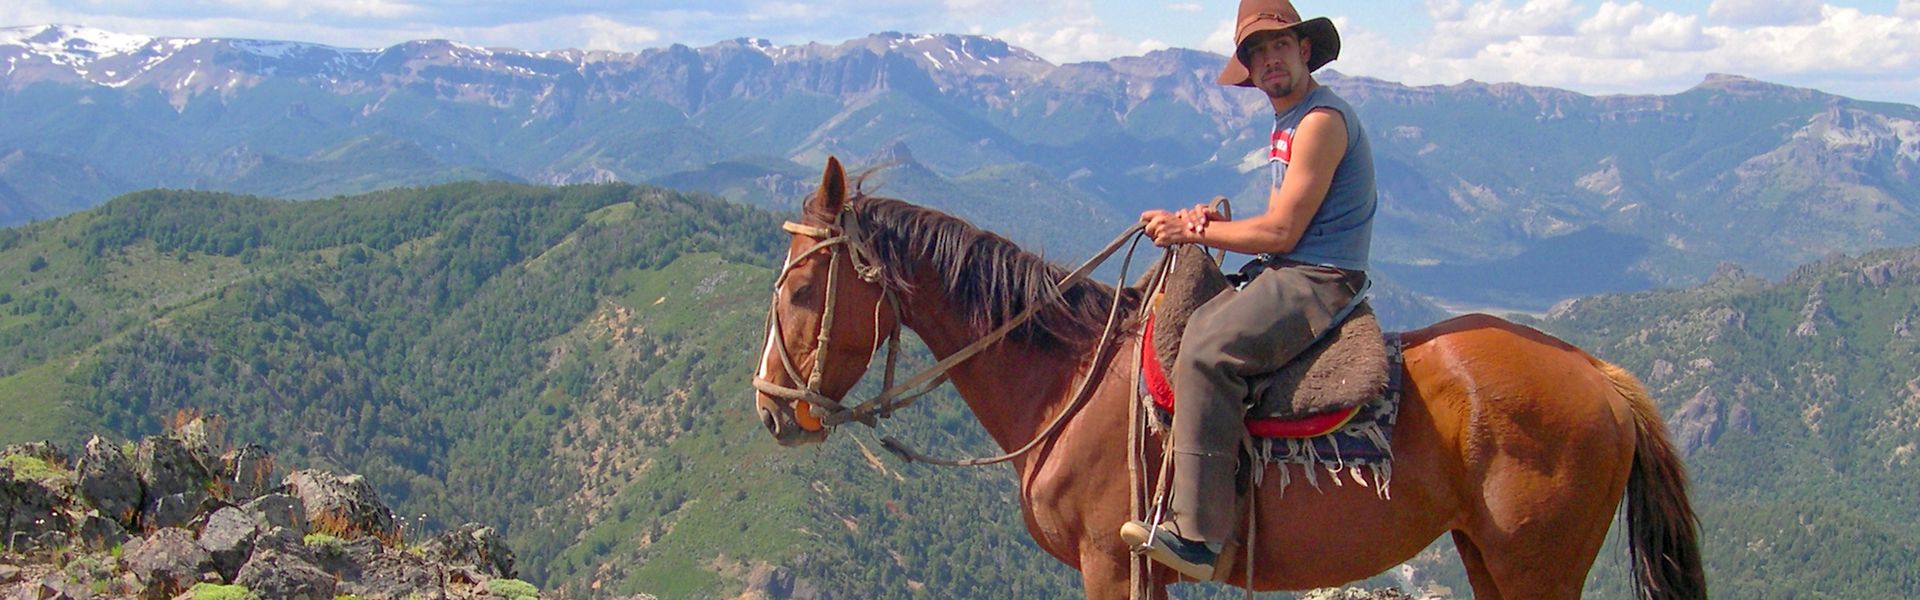 Randonnée à cheval en Patagonie - Argentine